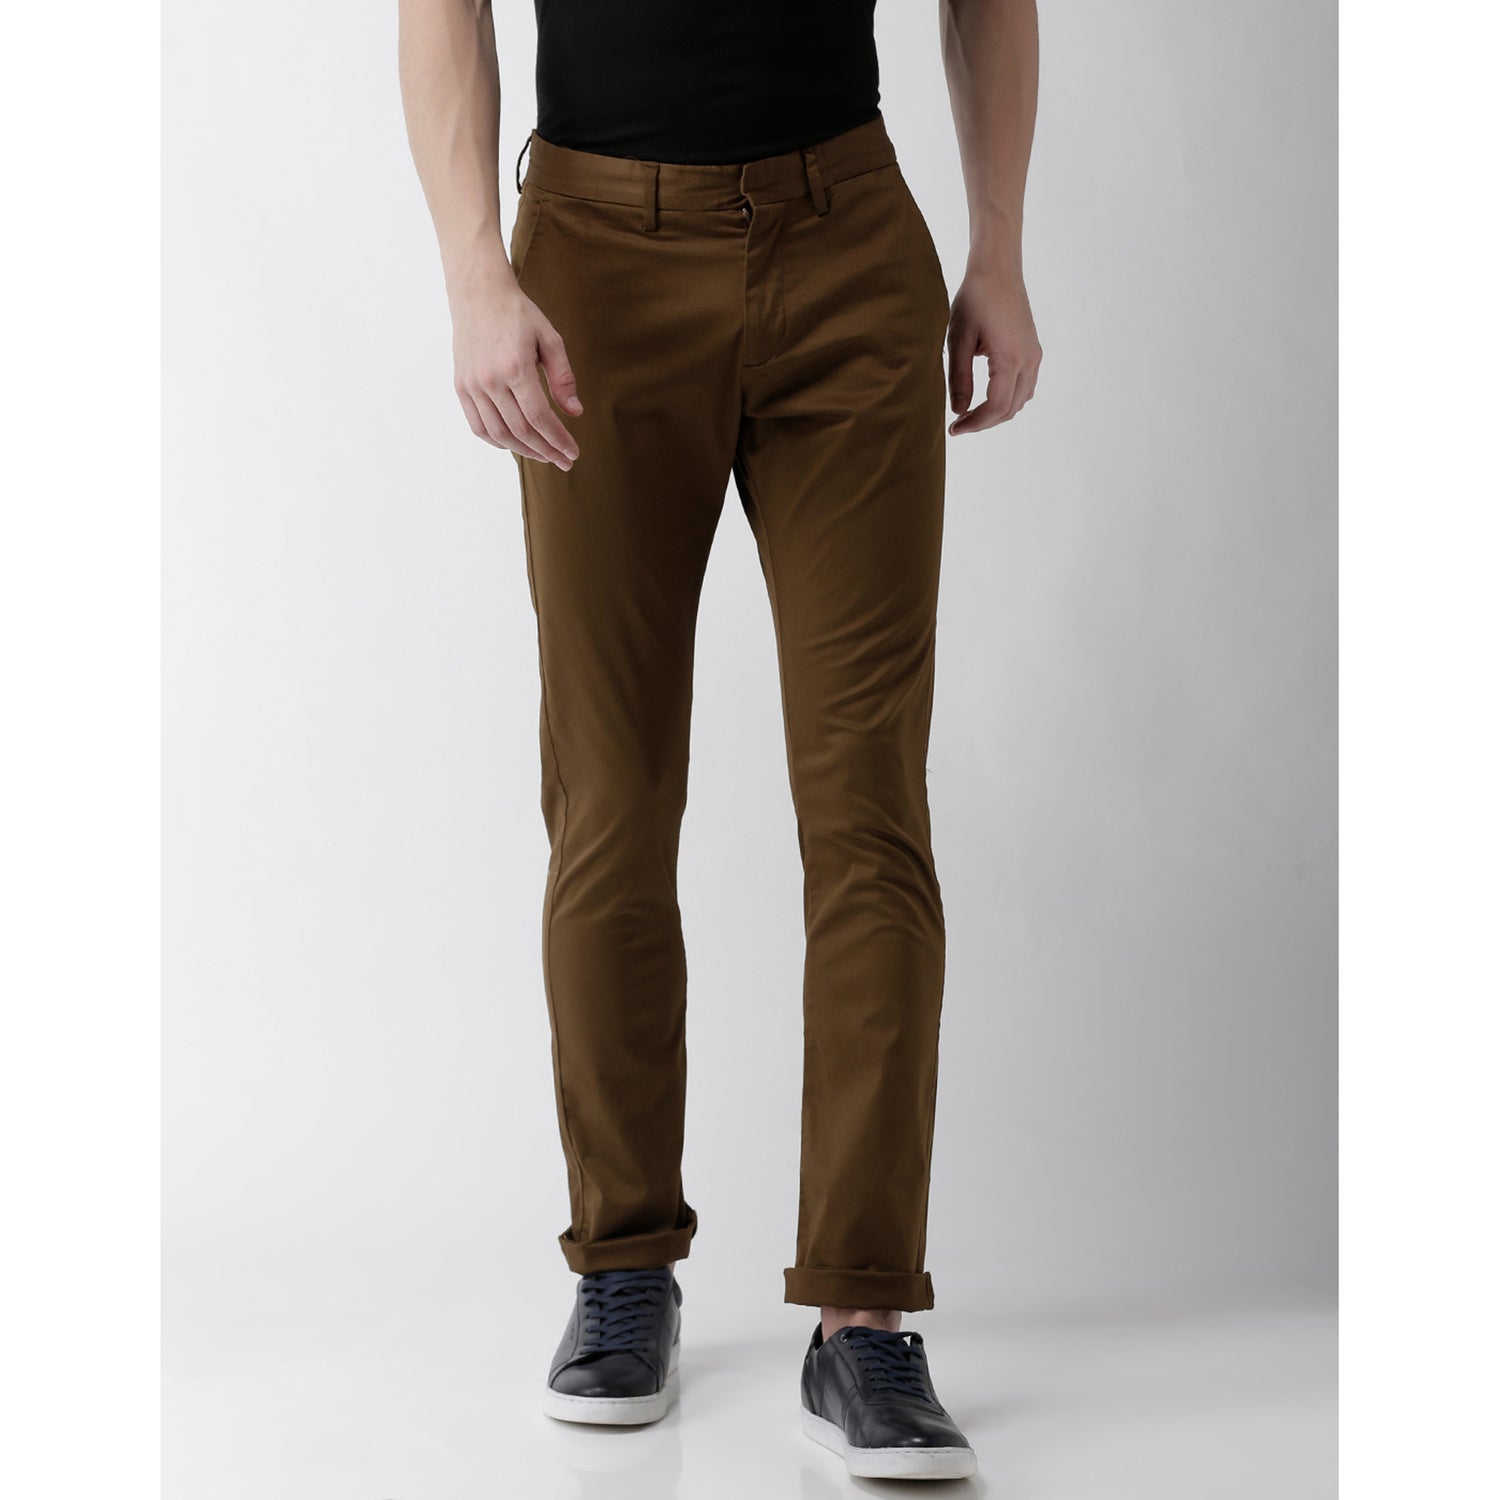 Brown Slim Fit Solid Regular Trousers (GOLAKE)